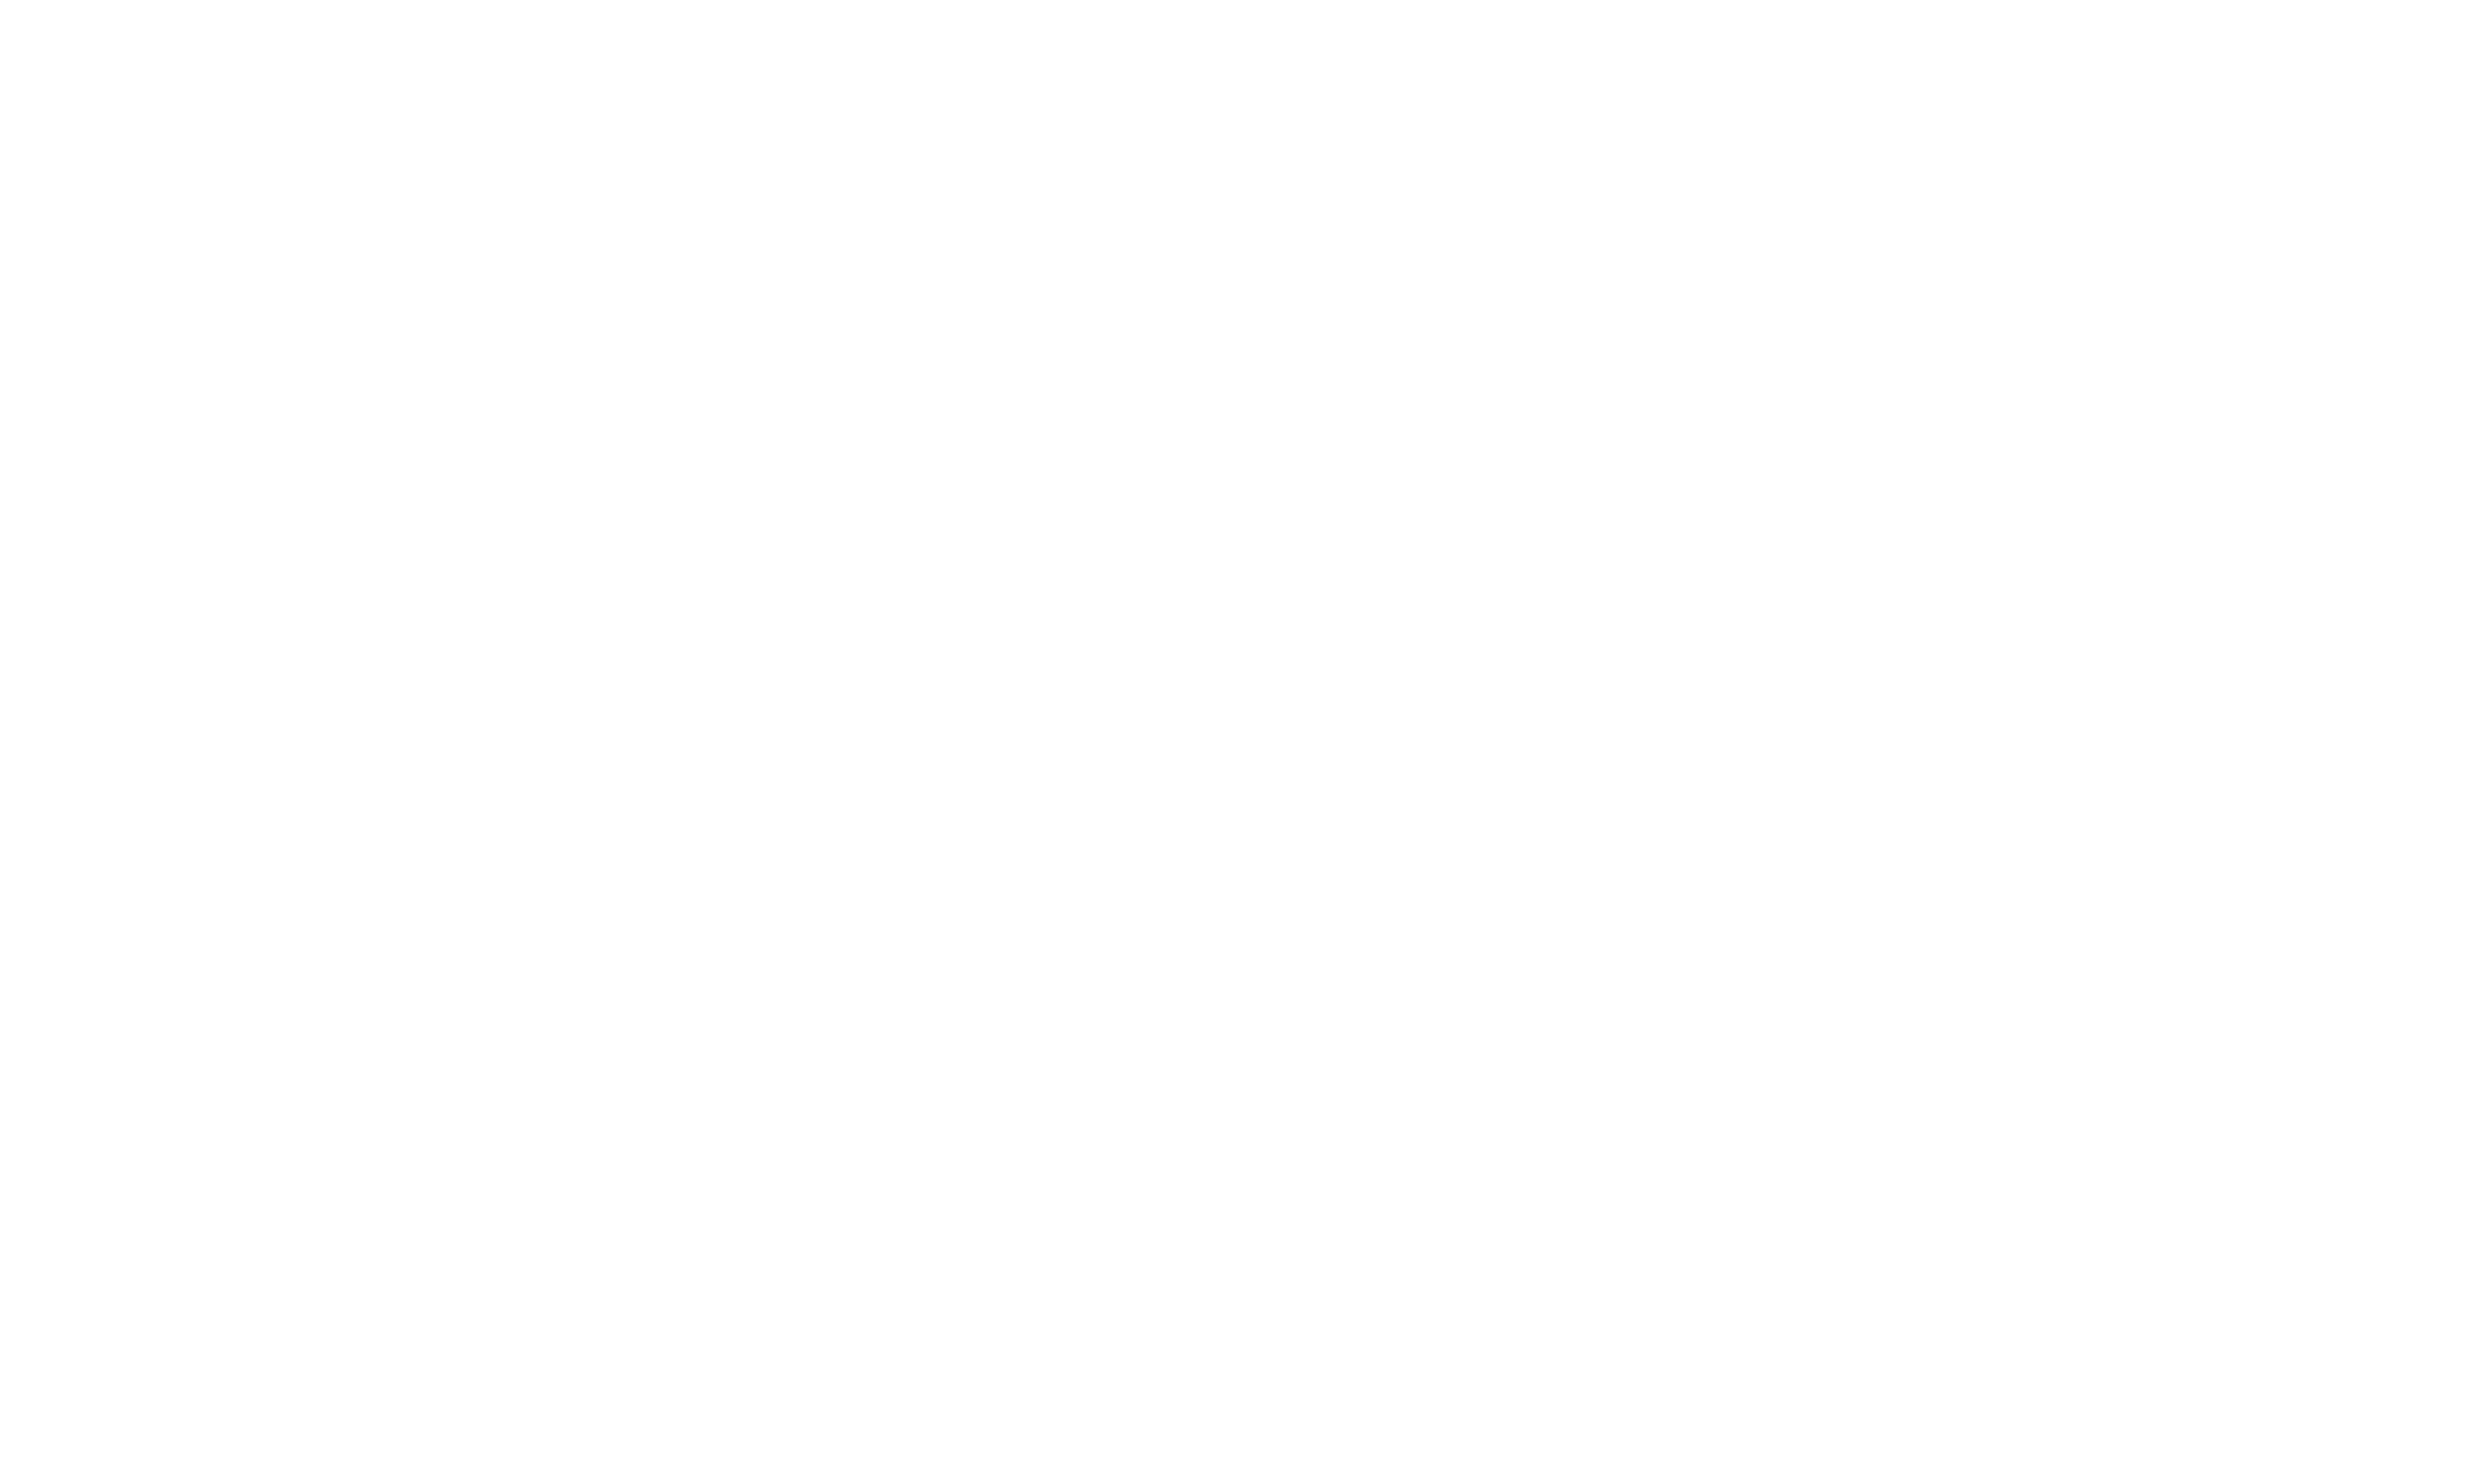 Multi_tech